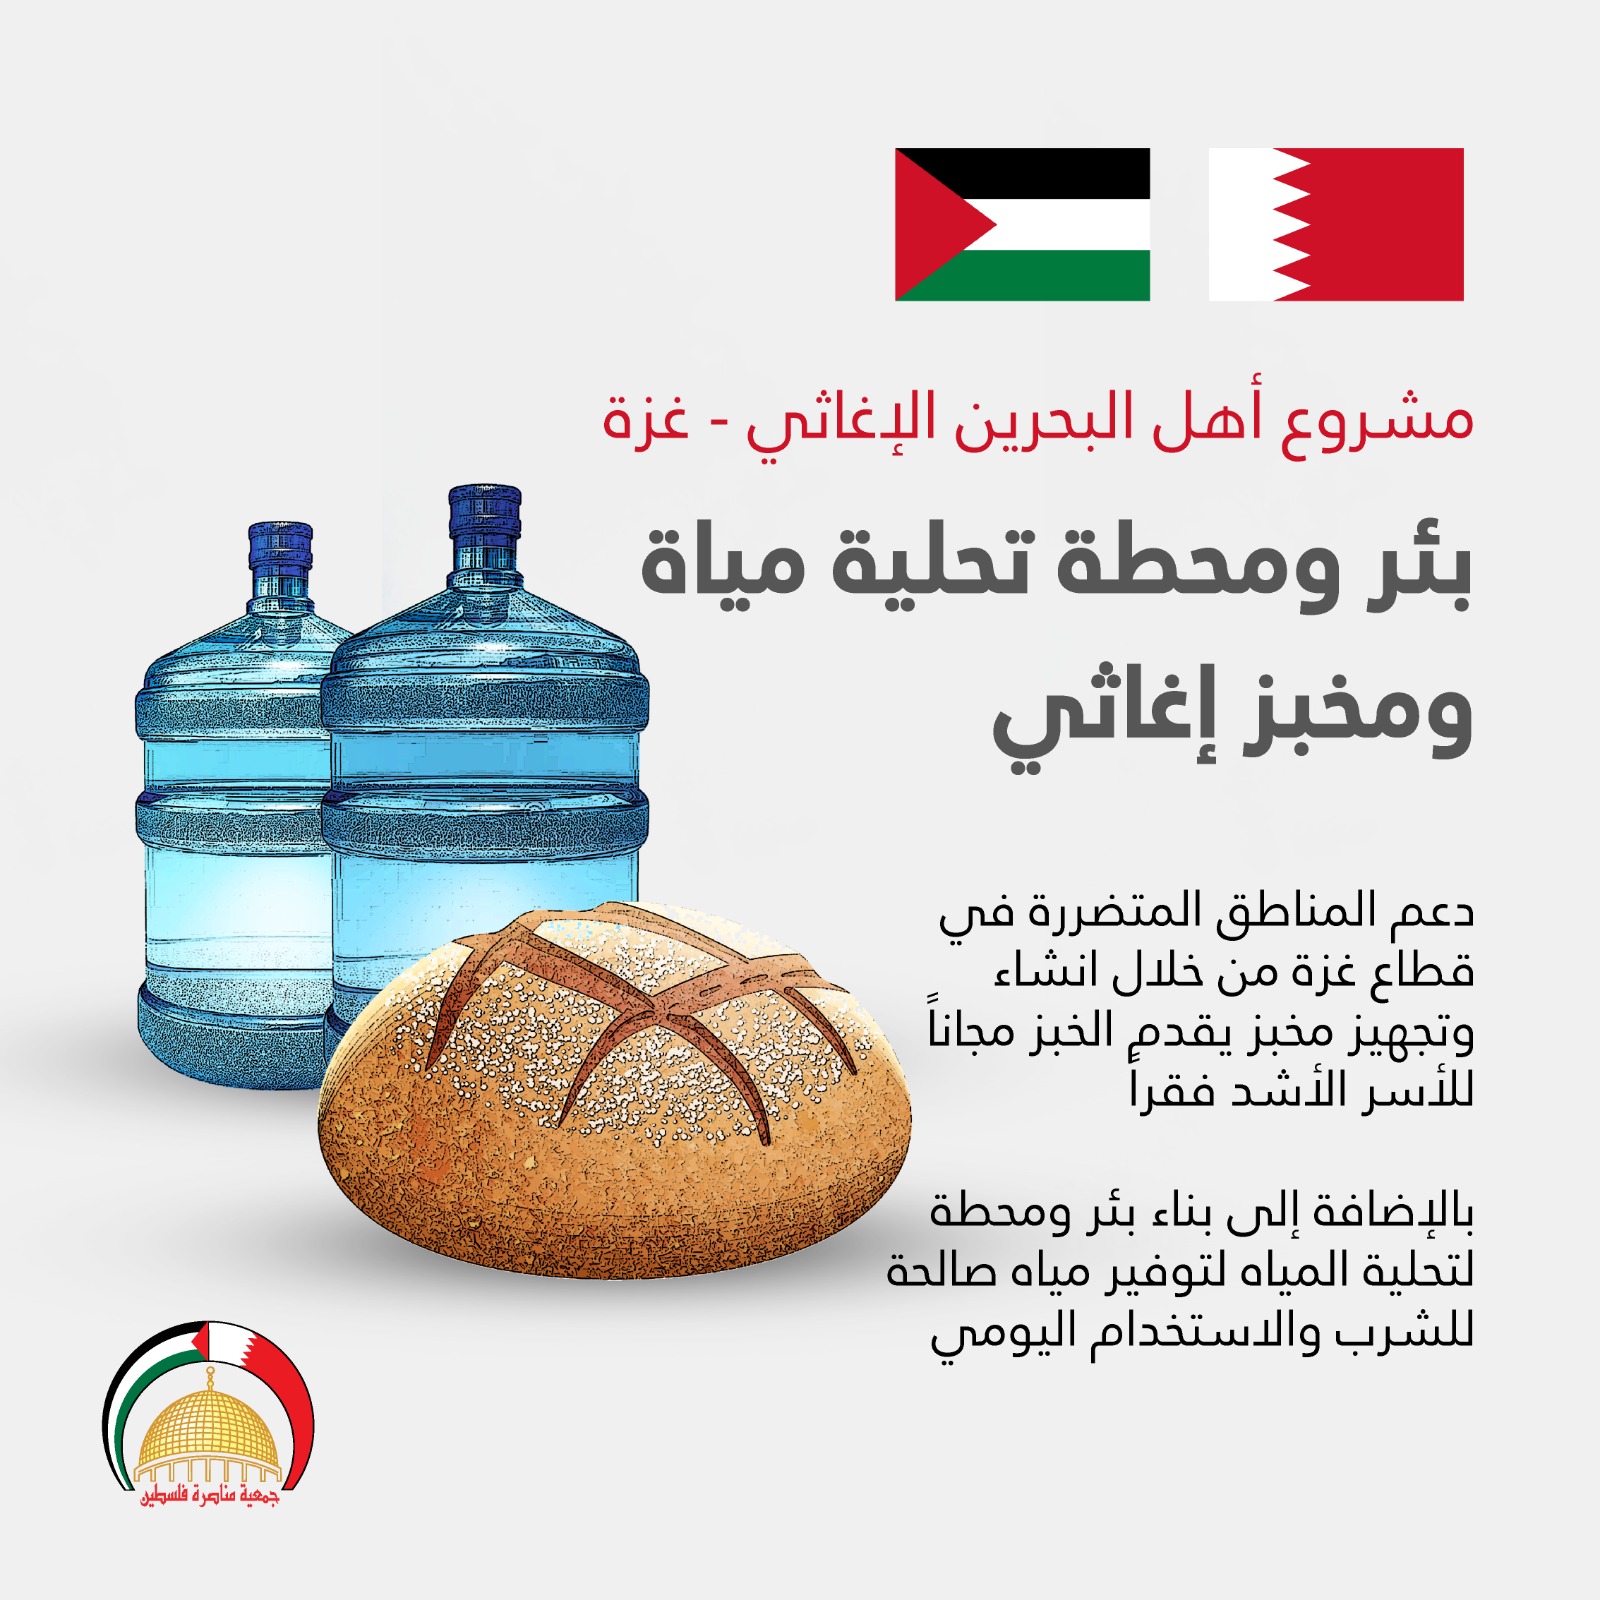 حملة أهل البحرين لإغاثة فلسطين
